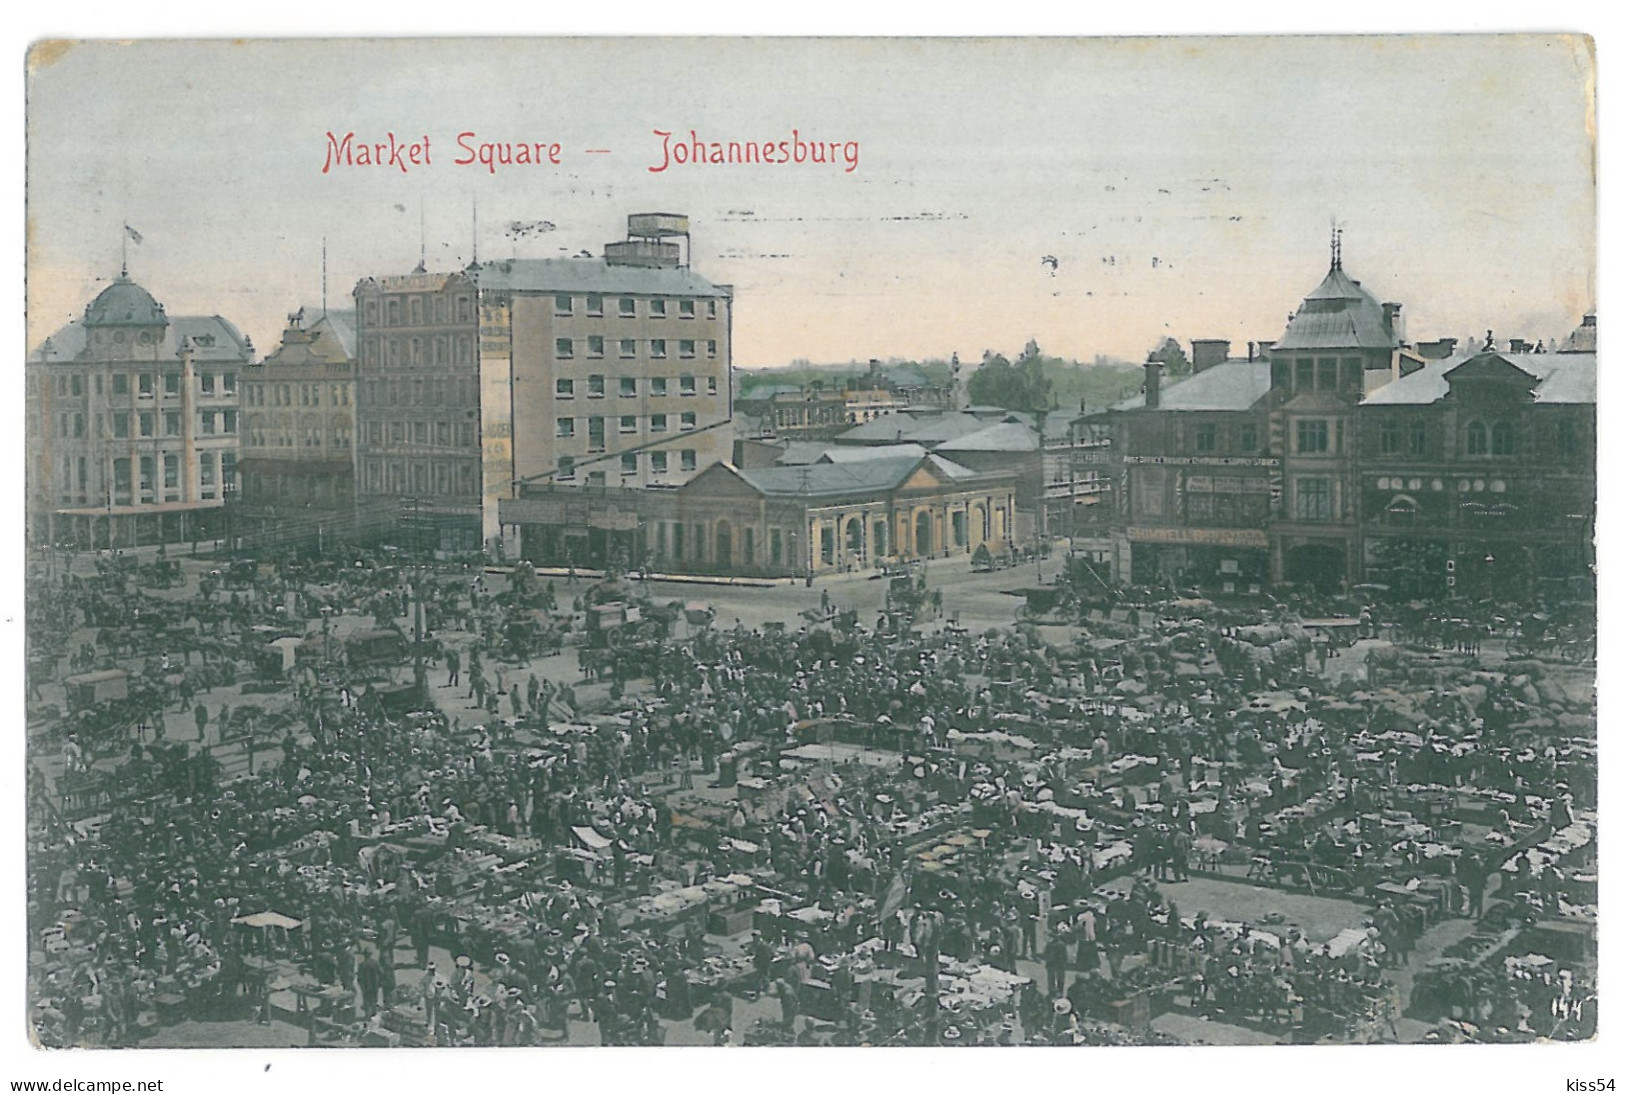 A 100 - 13806 JOHANNESBURG, Market - Old Postcard - Used - 1909 - Afrique Du Sud